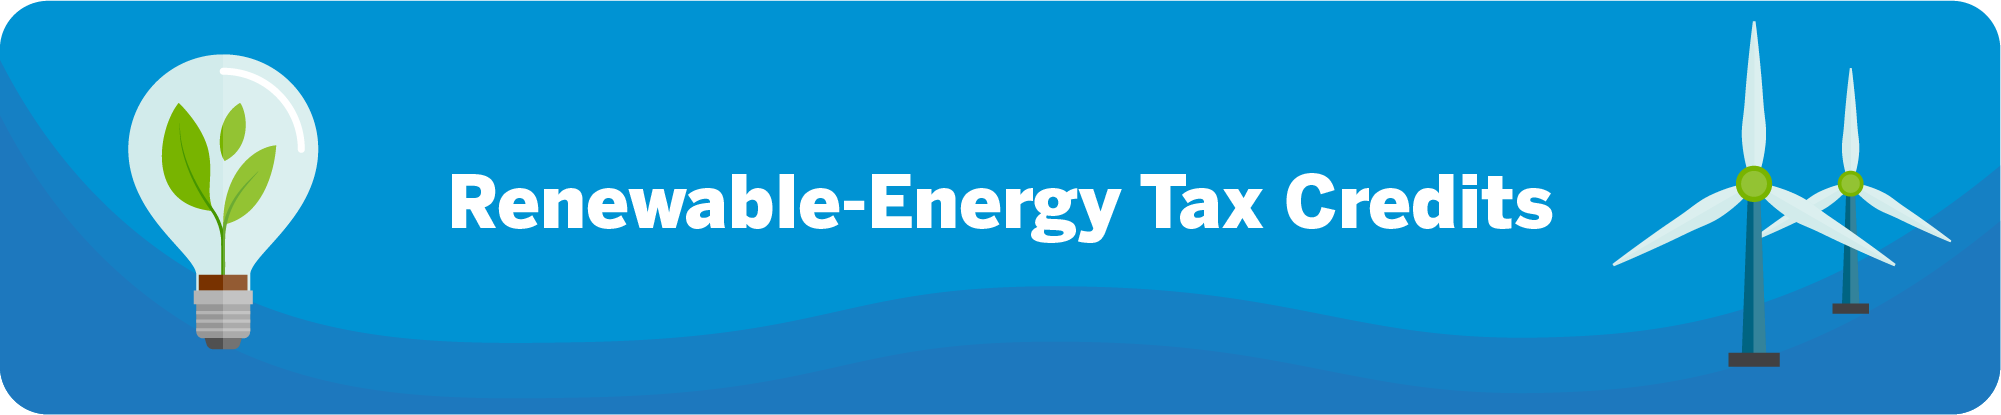 Renewable energy tax credits